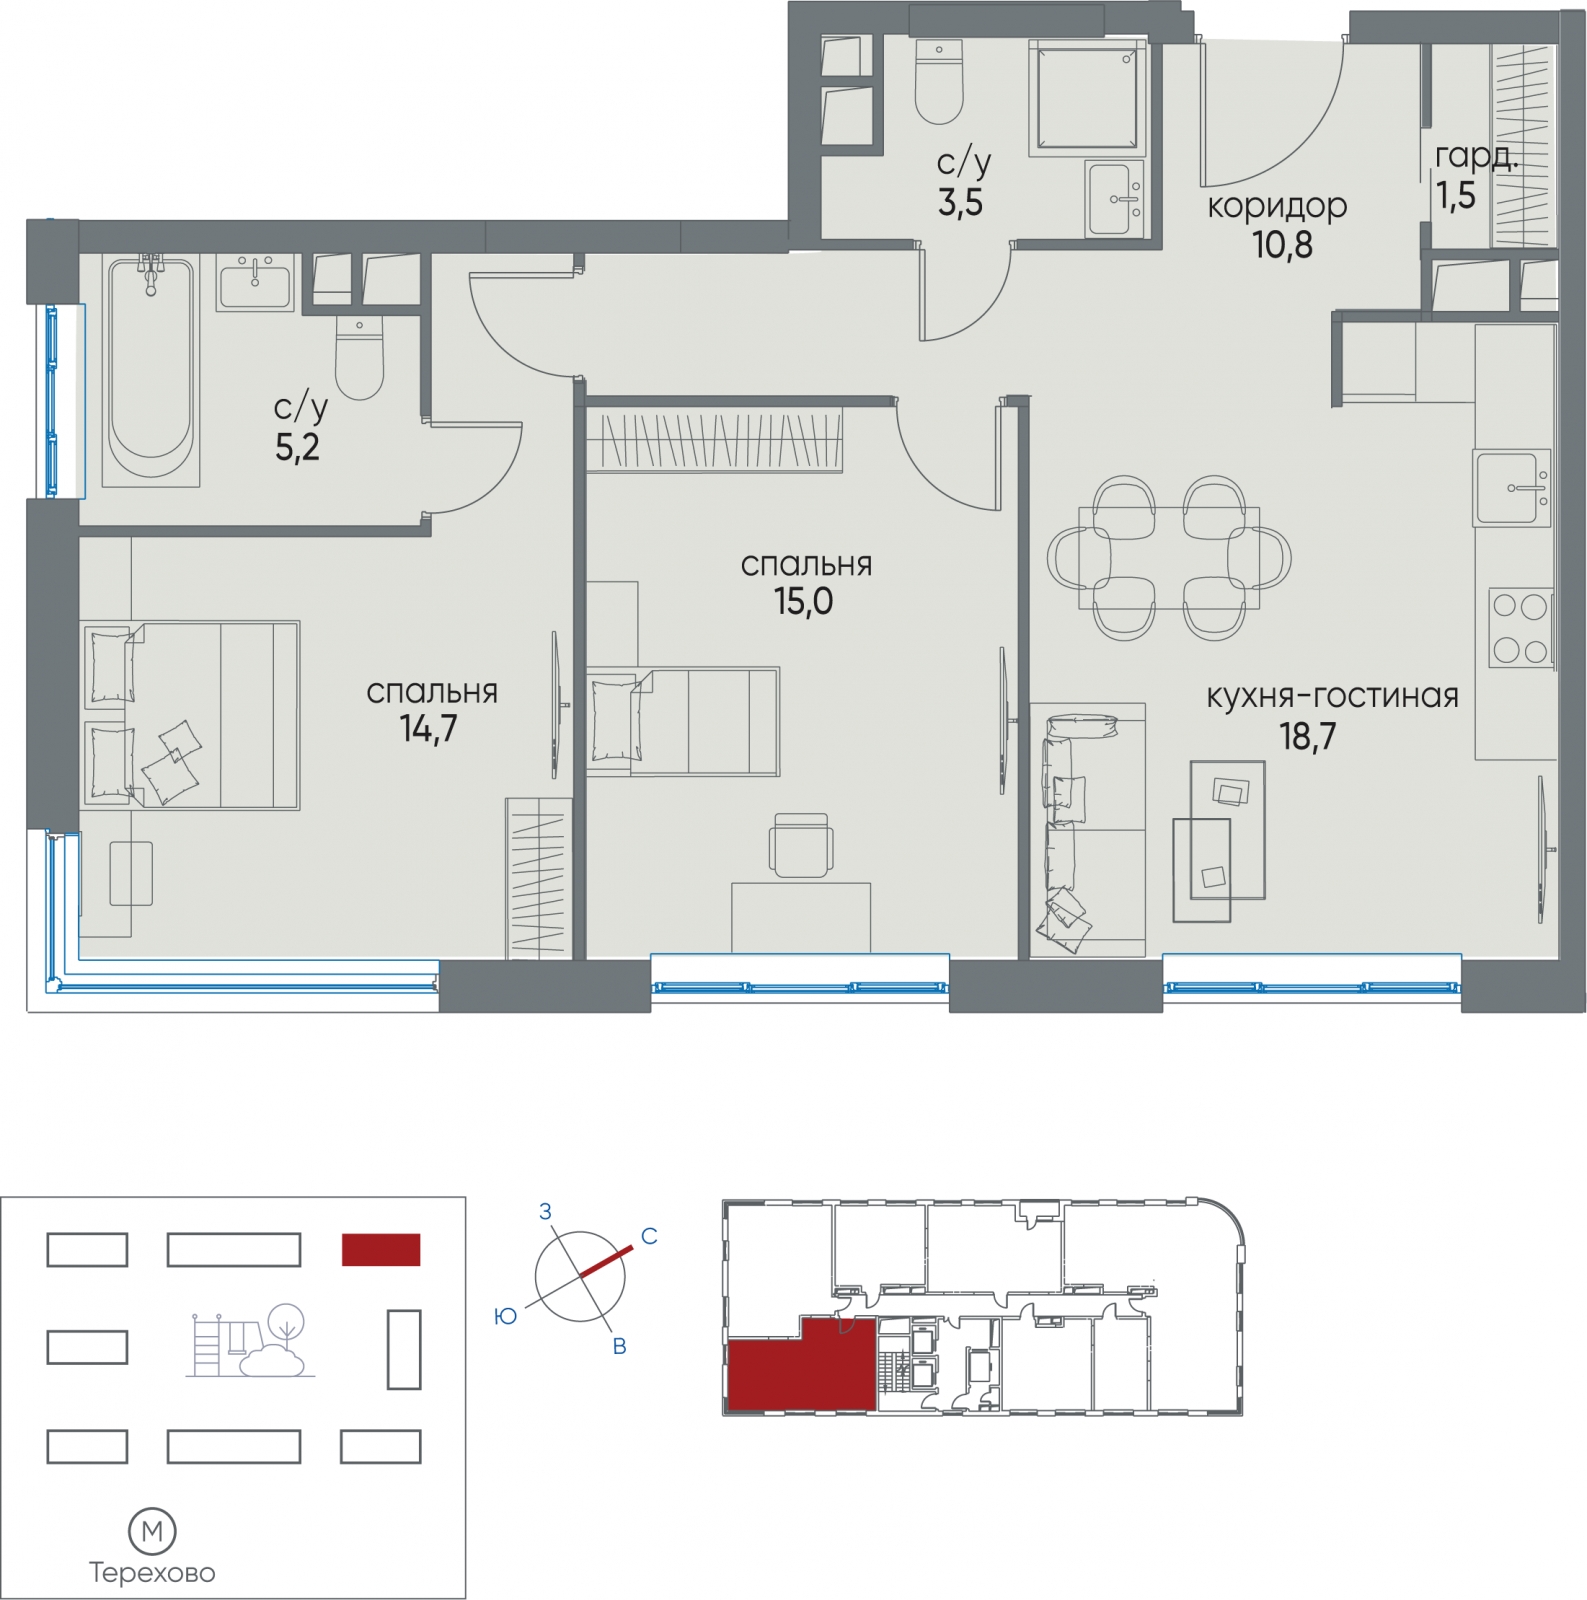 2-комнатная квартира с отделкой в ЖК WINGS апартаменты на Крыленко на 2 этаже в 1 секции. Дом сдан.